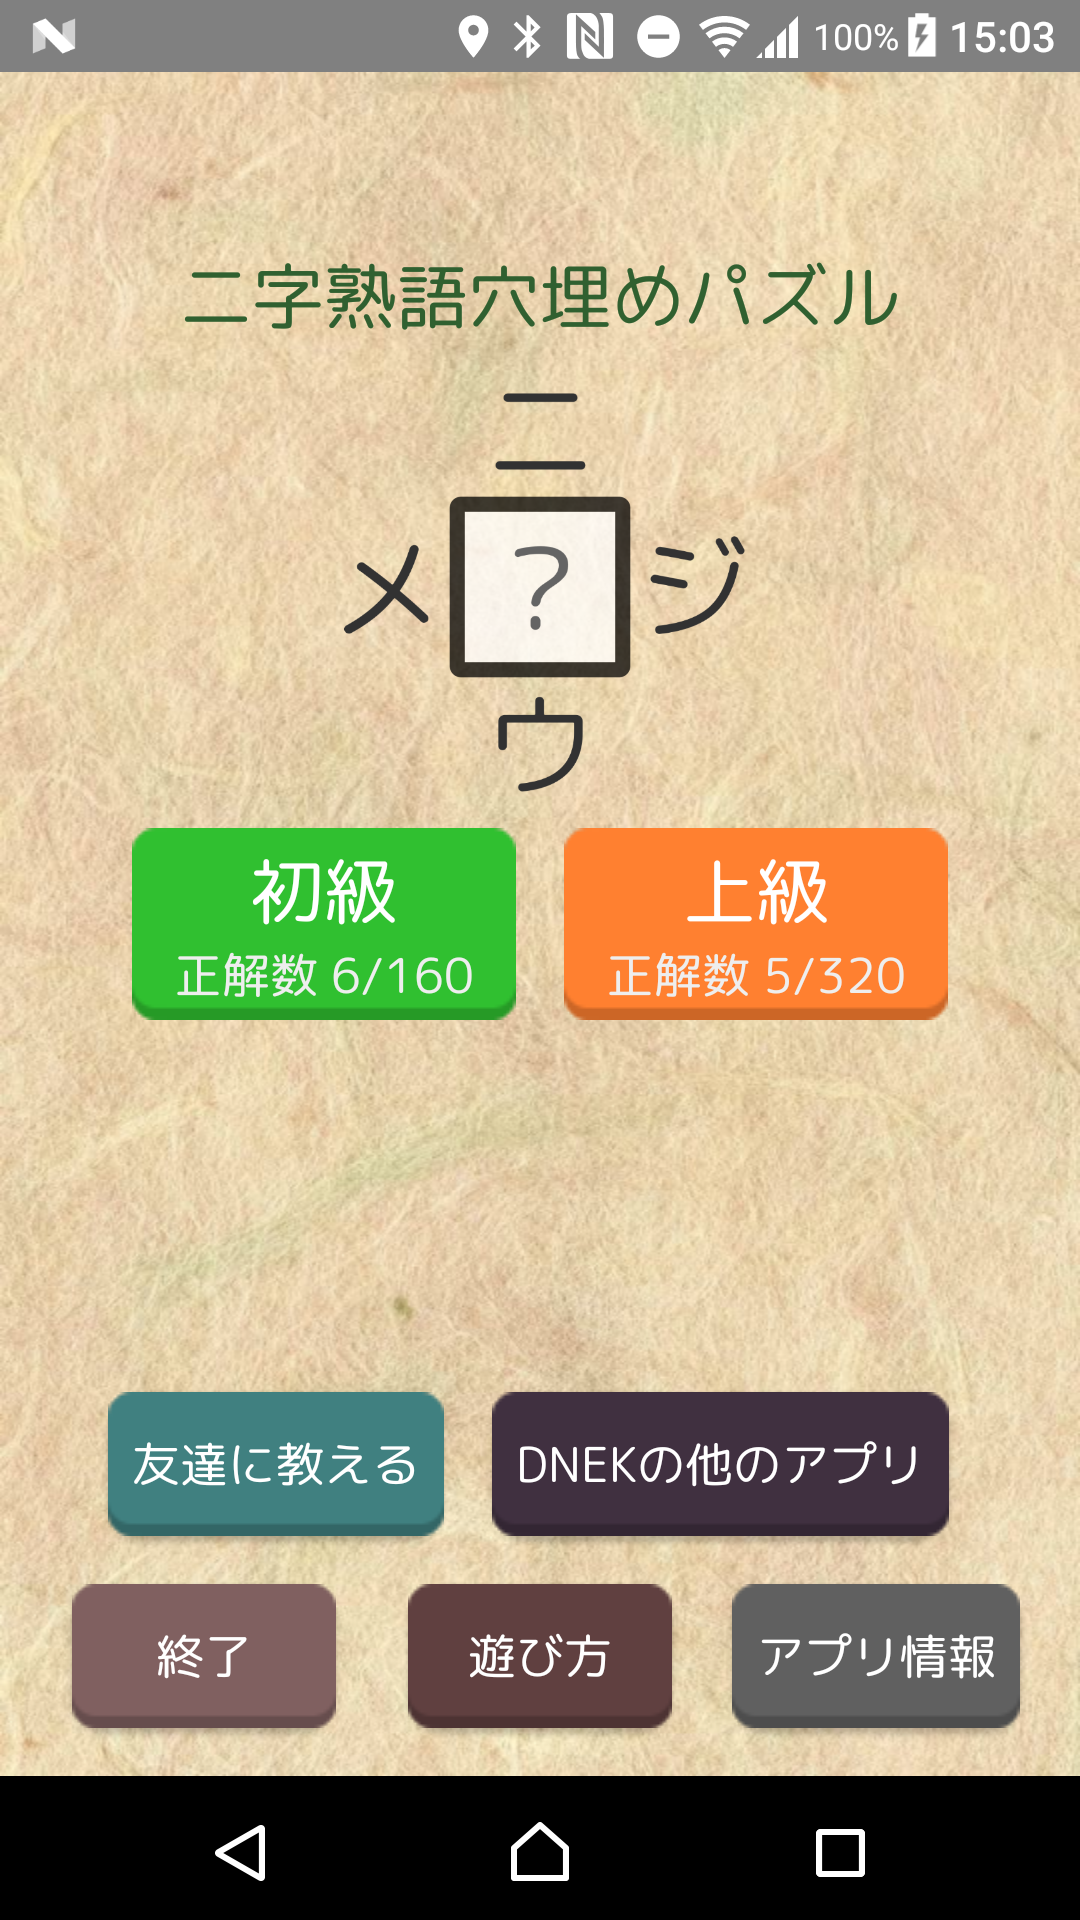 漢字パズル480問 二字熟語穴埋めパズル ニジウメ Download Game Taptap